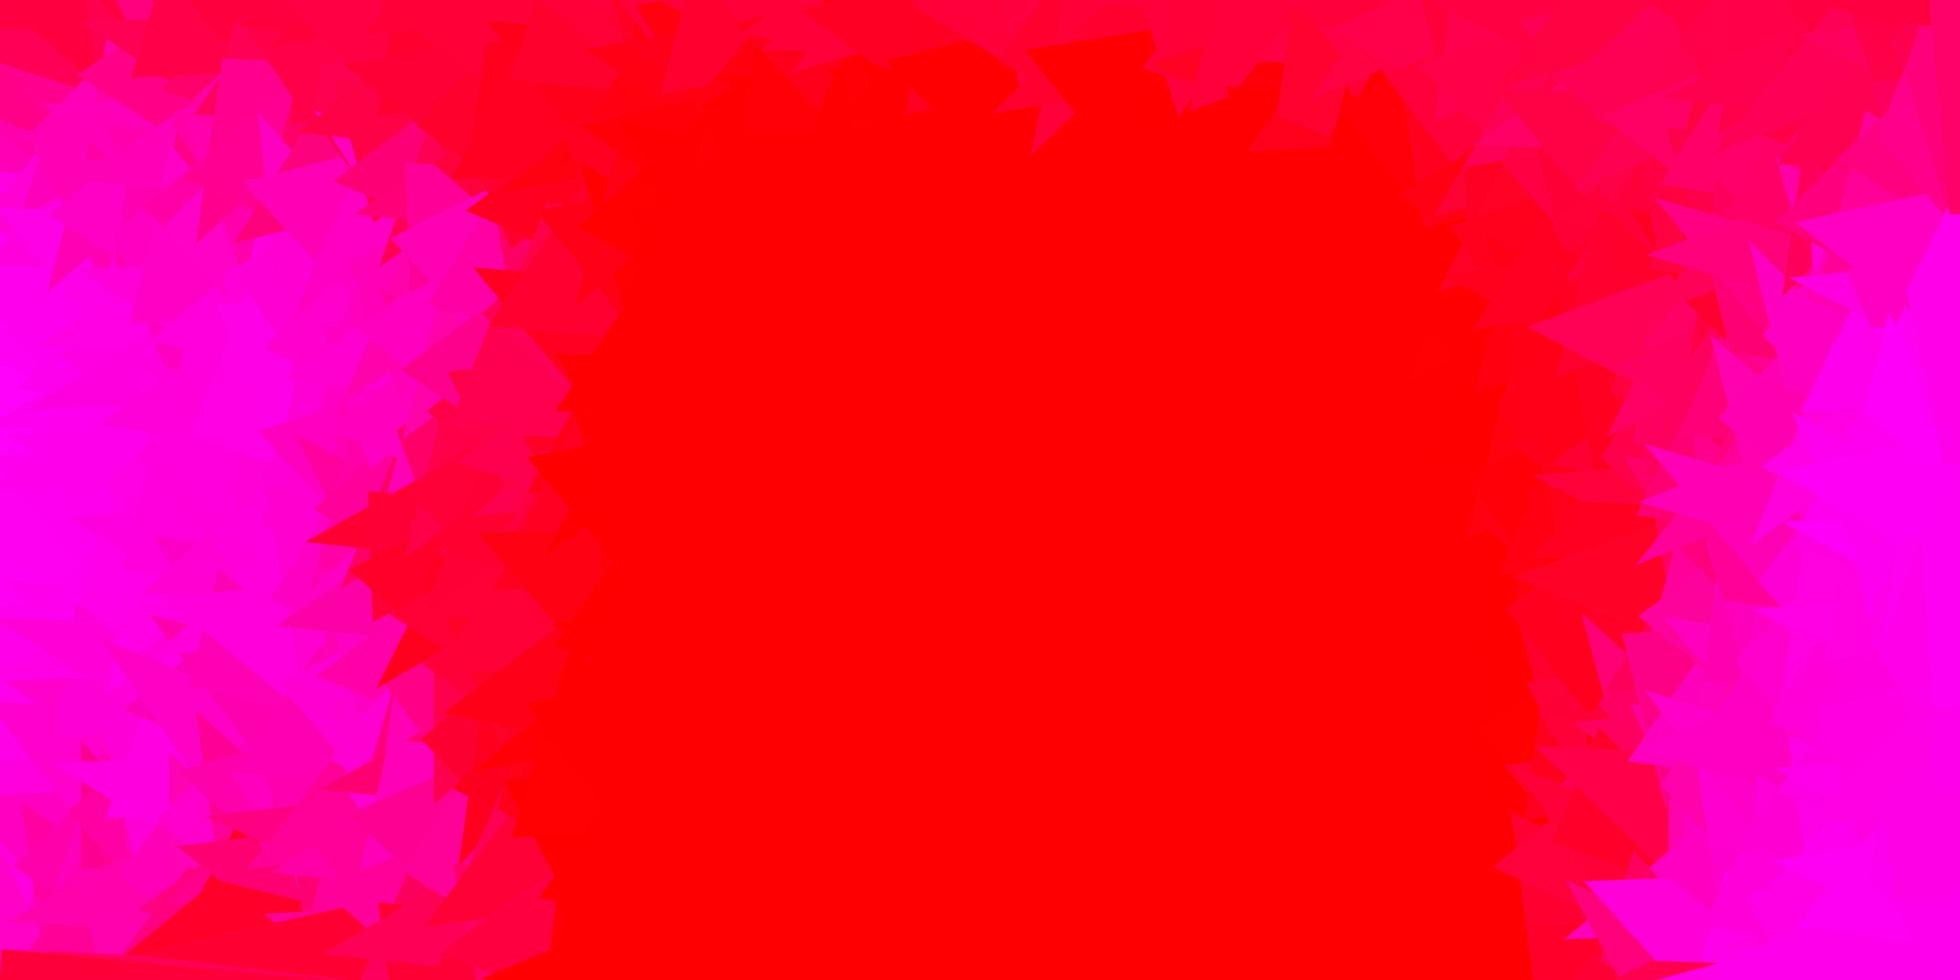 sfondo poligonale vettoriale rosa chiaro, rosso.